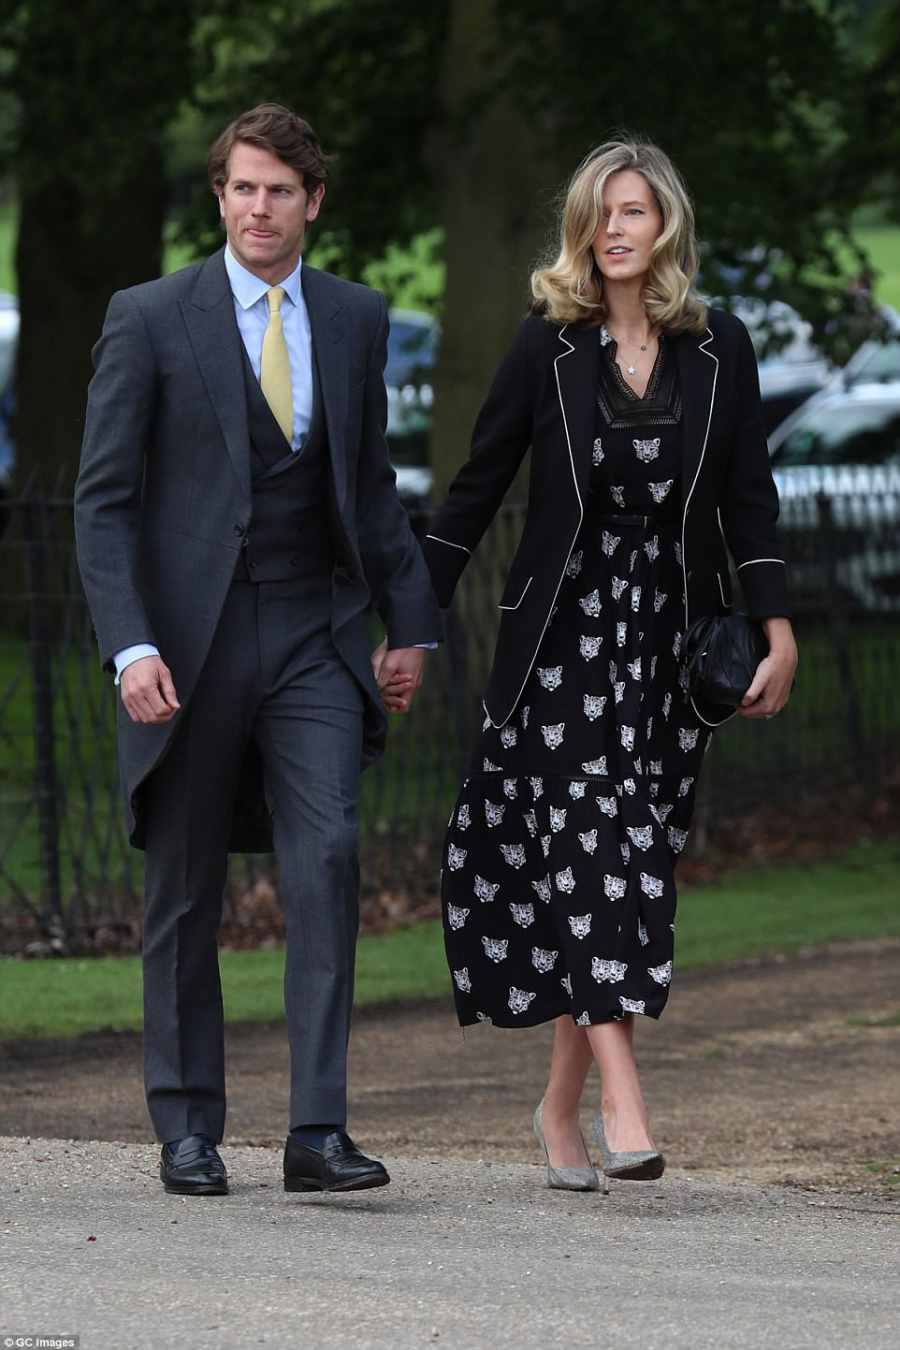 Olivia Hunt, người yêu cũ của Hoàng tử William, cũng có mặt trong đám cưới Hoàng gia vào năm 2011.